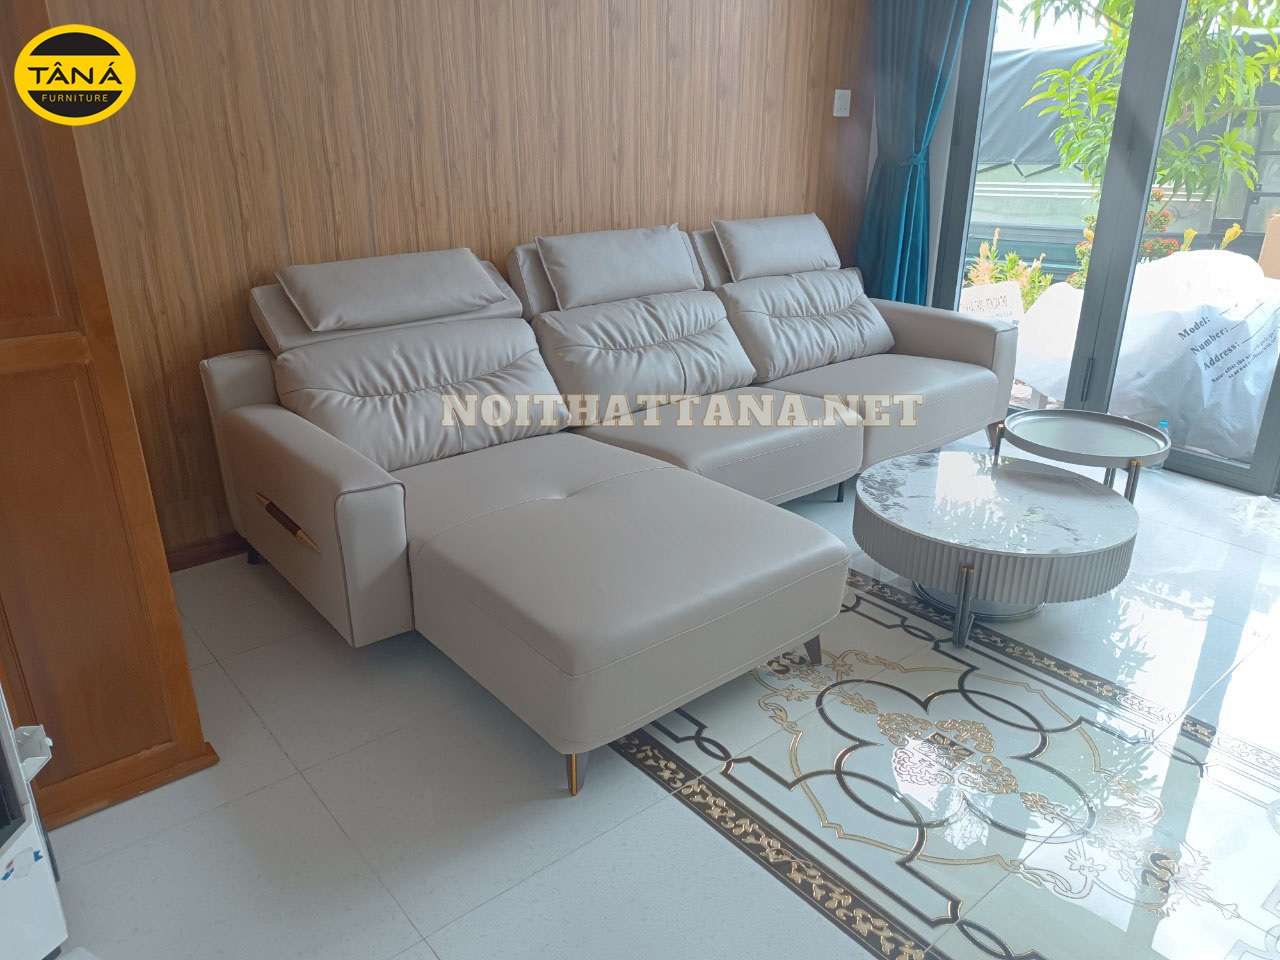 Hãy thử chọn mẫu ghế sofa chân sắt màu trắng hiện đại để tôn lên vẻ đẹp đẳng cấp cho ngôi nhà của bạn. Chỉ với thiết kế cơ bản nhưng sự cao cấp của chất liệu đã thể hiện giá trị của bộ ghế.